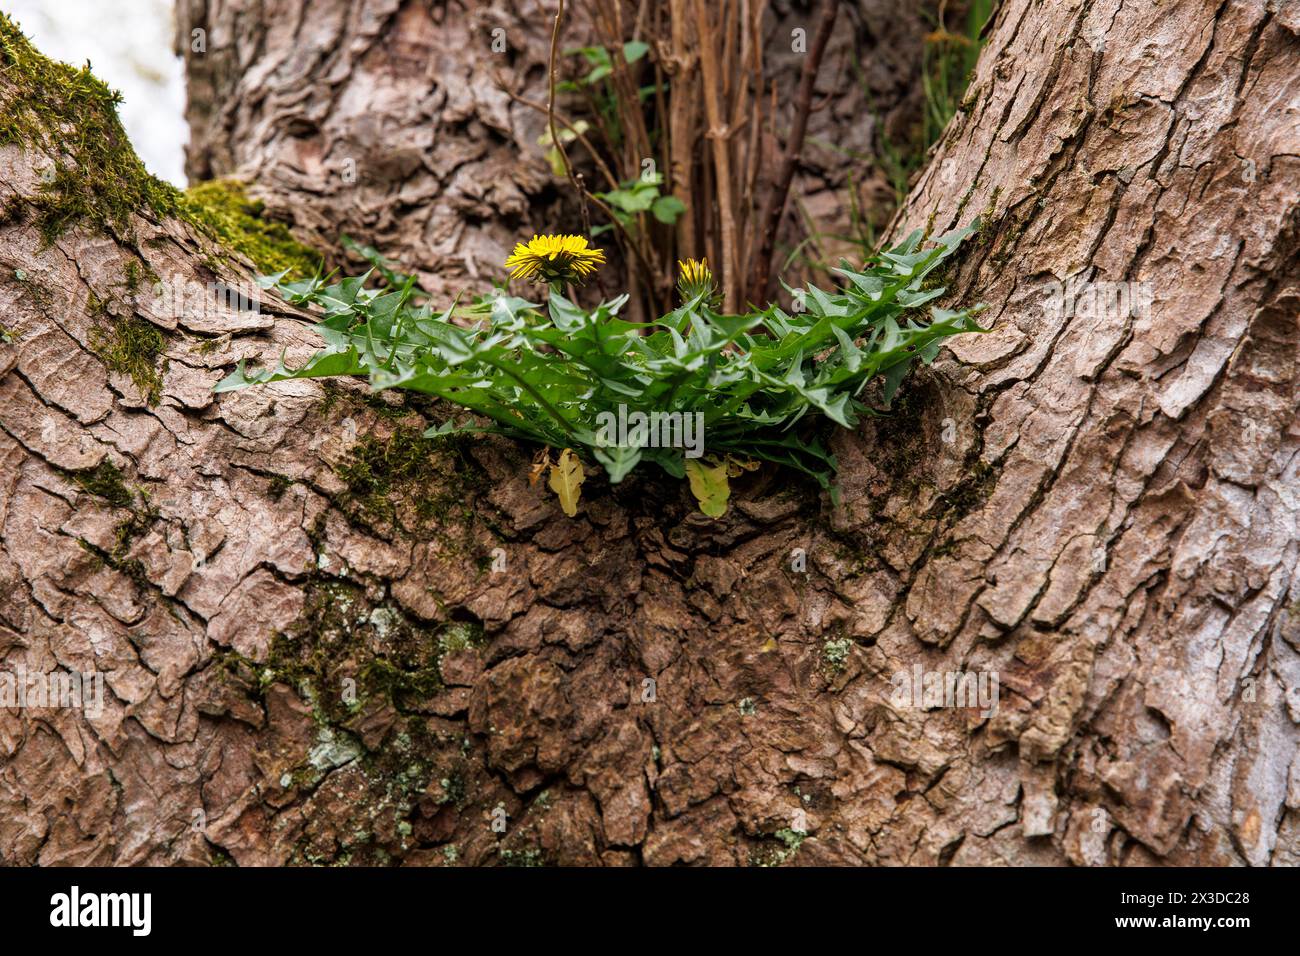 löwenzahn (lat. Taraxacum) wächst auf einem Gabelzweig eines Baumes, Deutschland. Loewenzahn (lat. Taraxacum) waechst in der Astgabel eines Baums, Deutschland Stockfoto